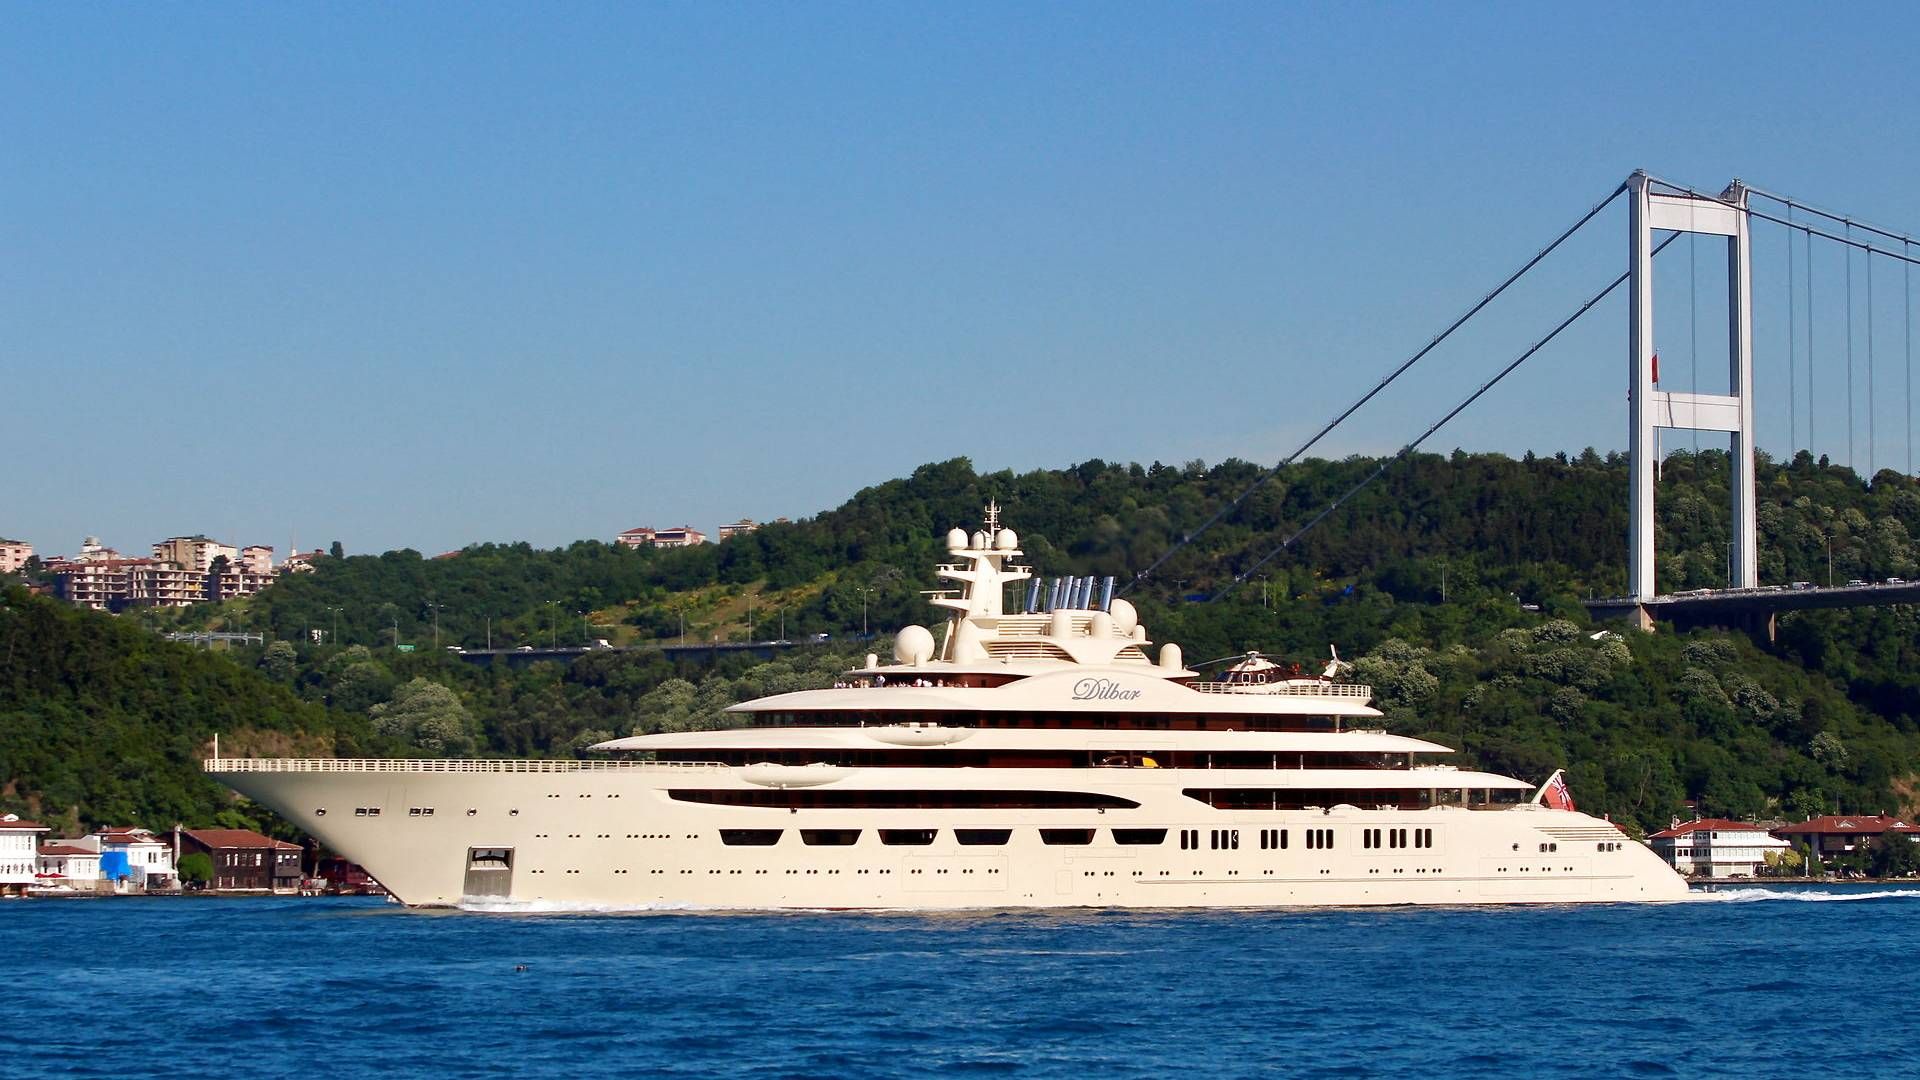 Den beslaglagte yacht Dilbar anslås at have en værdi på 4 mia. kr. Arkivfoto: Yoruk Isik/Reuters/Ritzau Scanpix